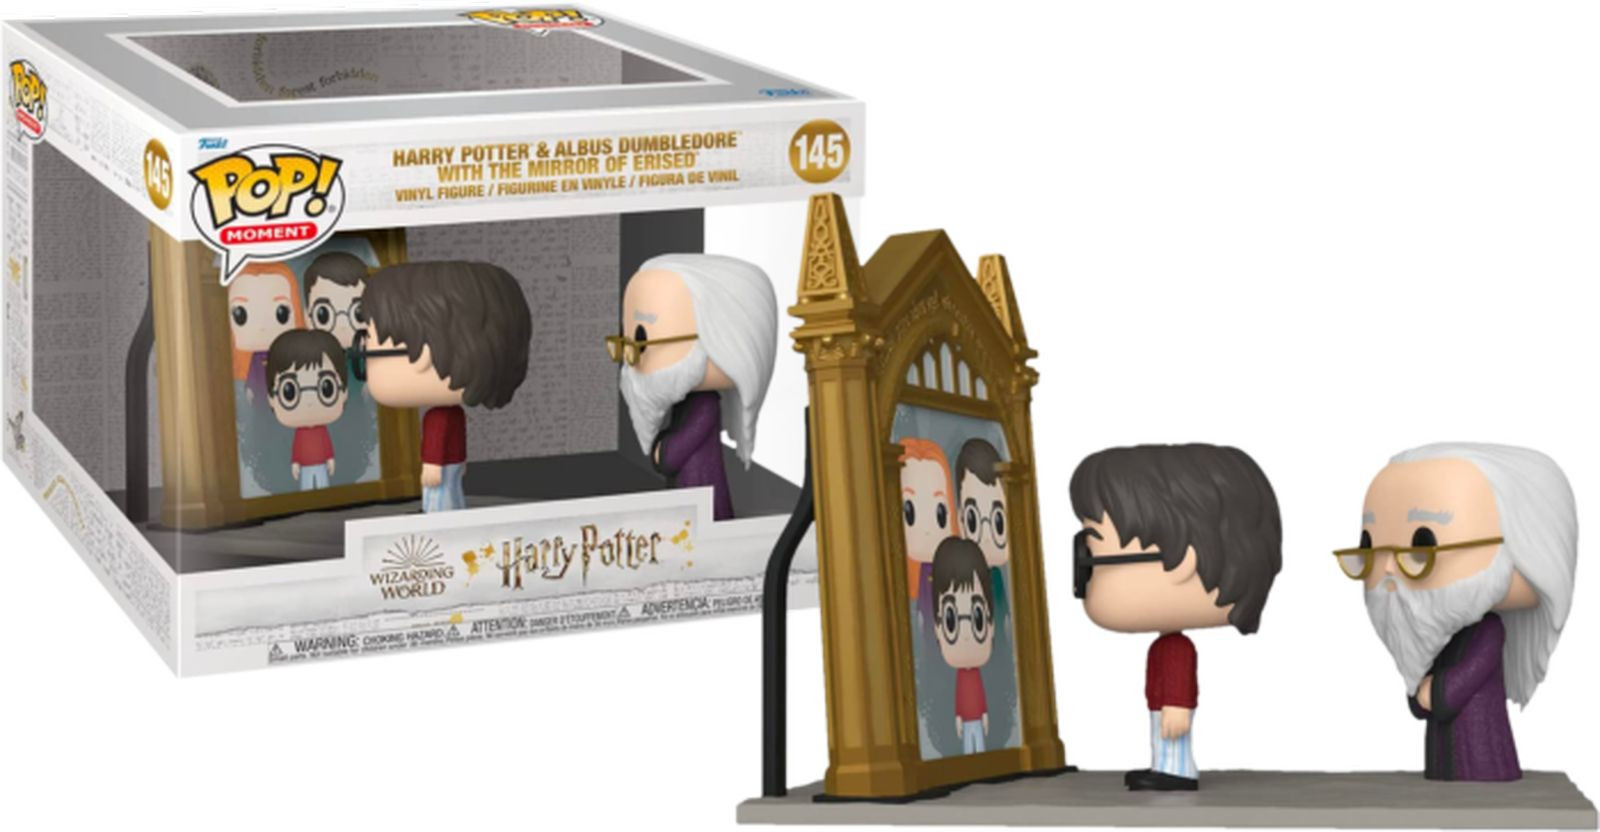 Figurine Pop Harry Potter #145 pas cher : Harry Potter et Albus